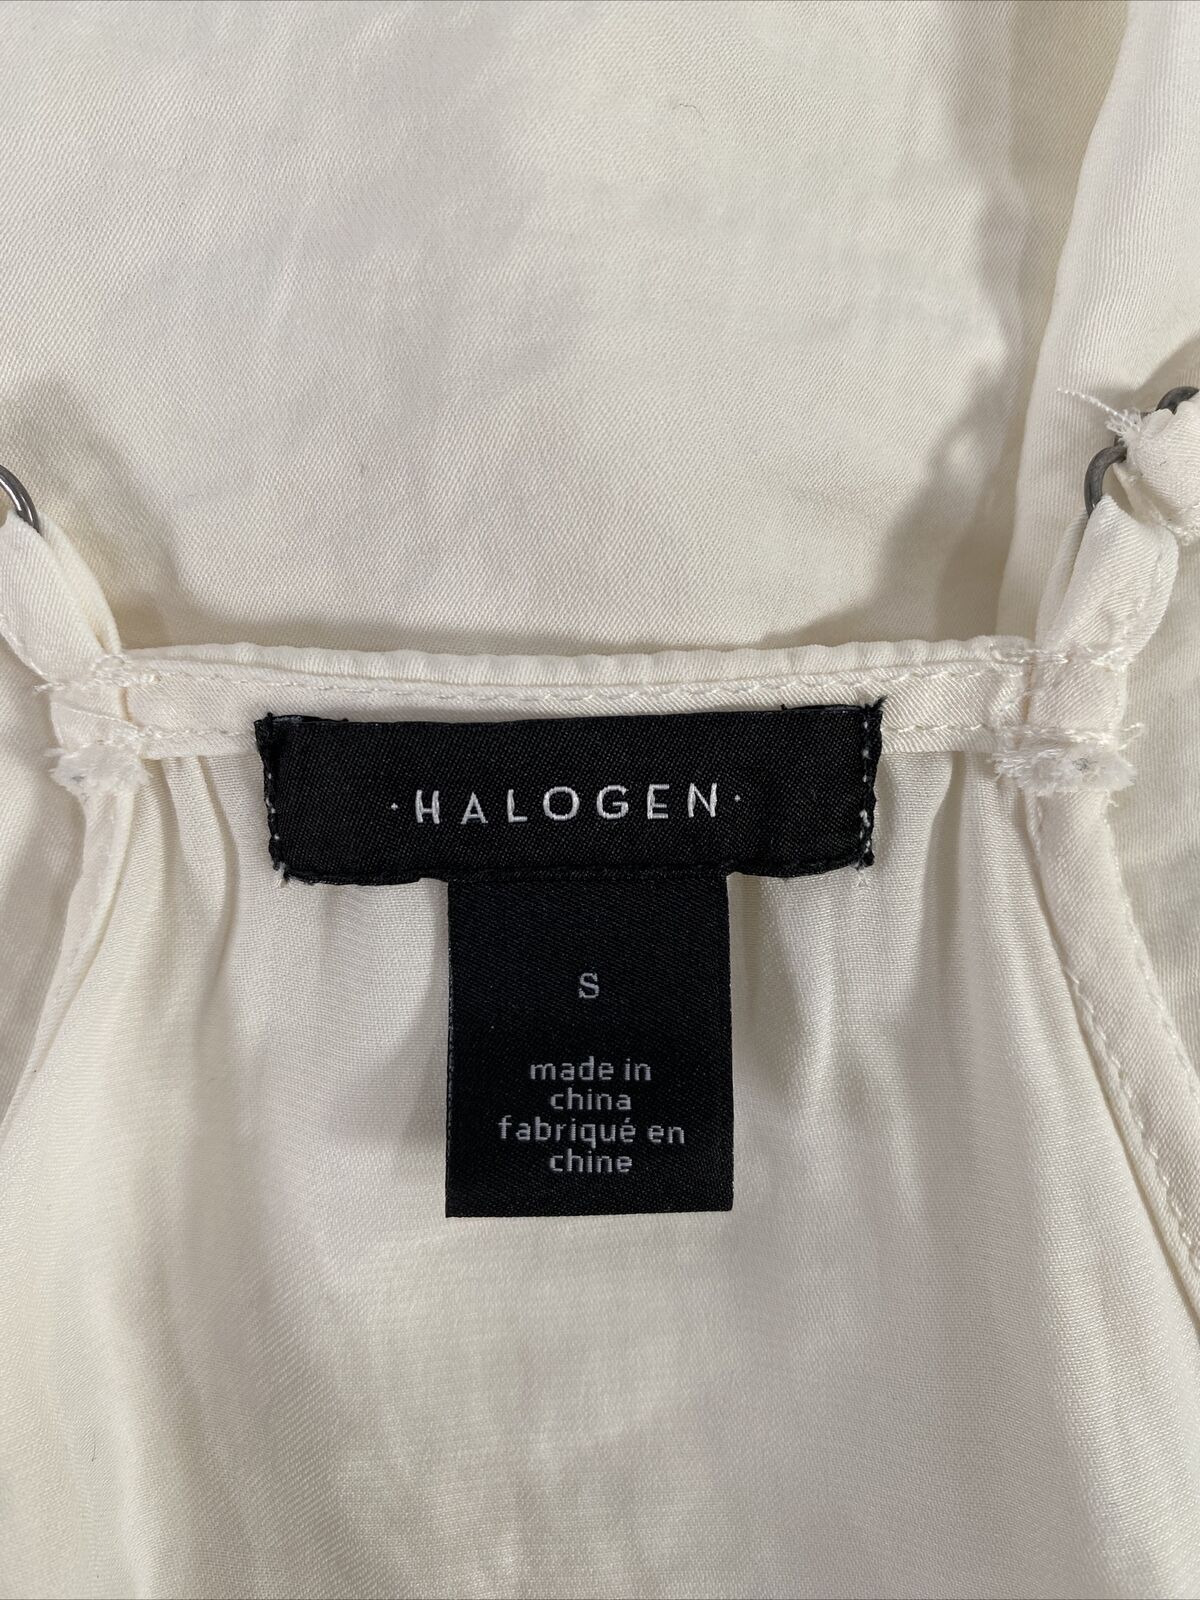 Camiseta sin mangas con ribete de encaje sin mangas de color marfil/blanco Halogen para mujer - S